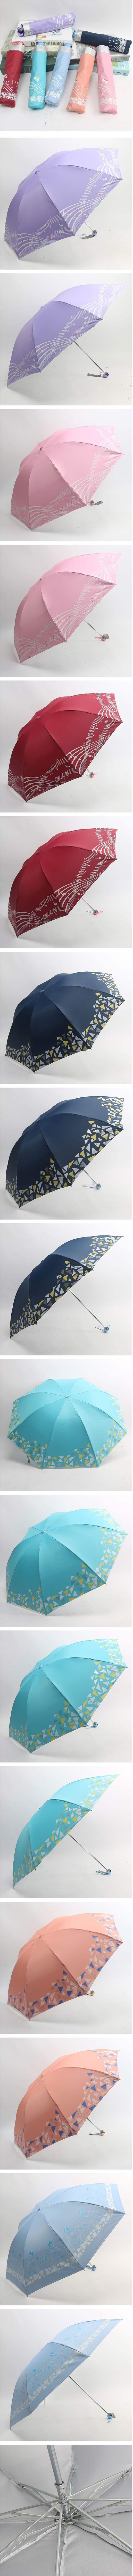 【周年庆拼团】拼团仅售16元包邮！天堂伞336T银胶晴雨伞 男女便携式太阳伞折叠雨伞